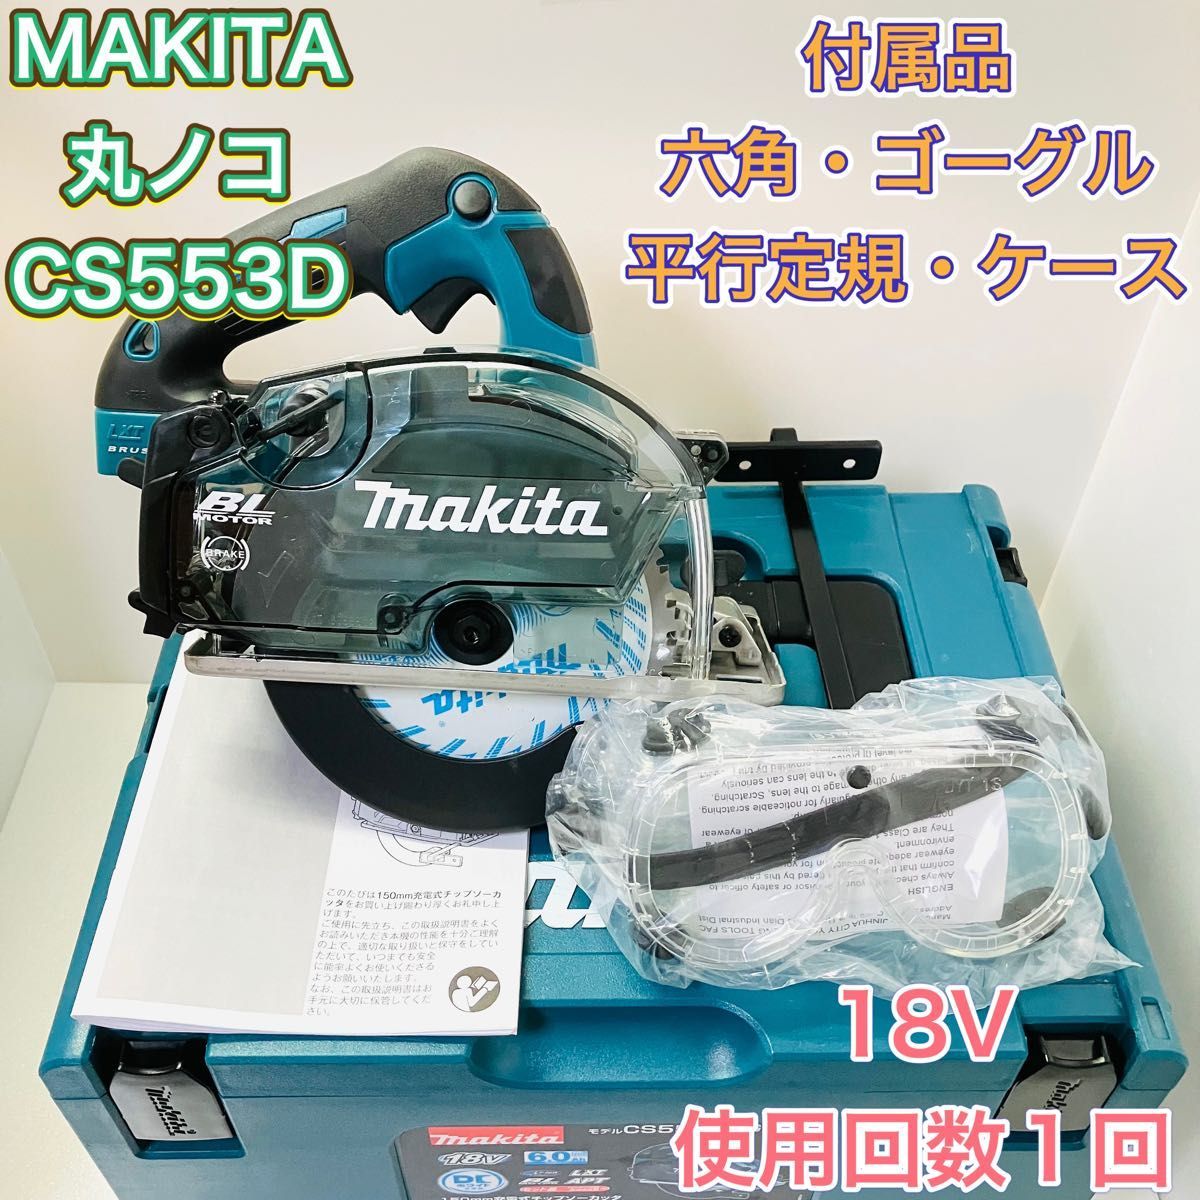 MAKITA マキタ CS553D 充電式 マルノコ 丸ノコ 丸鋸 チップソー